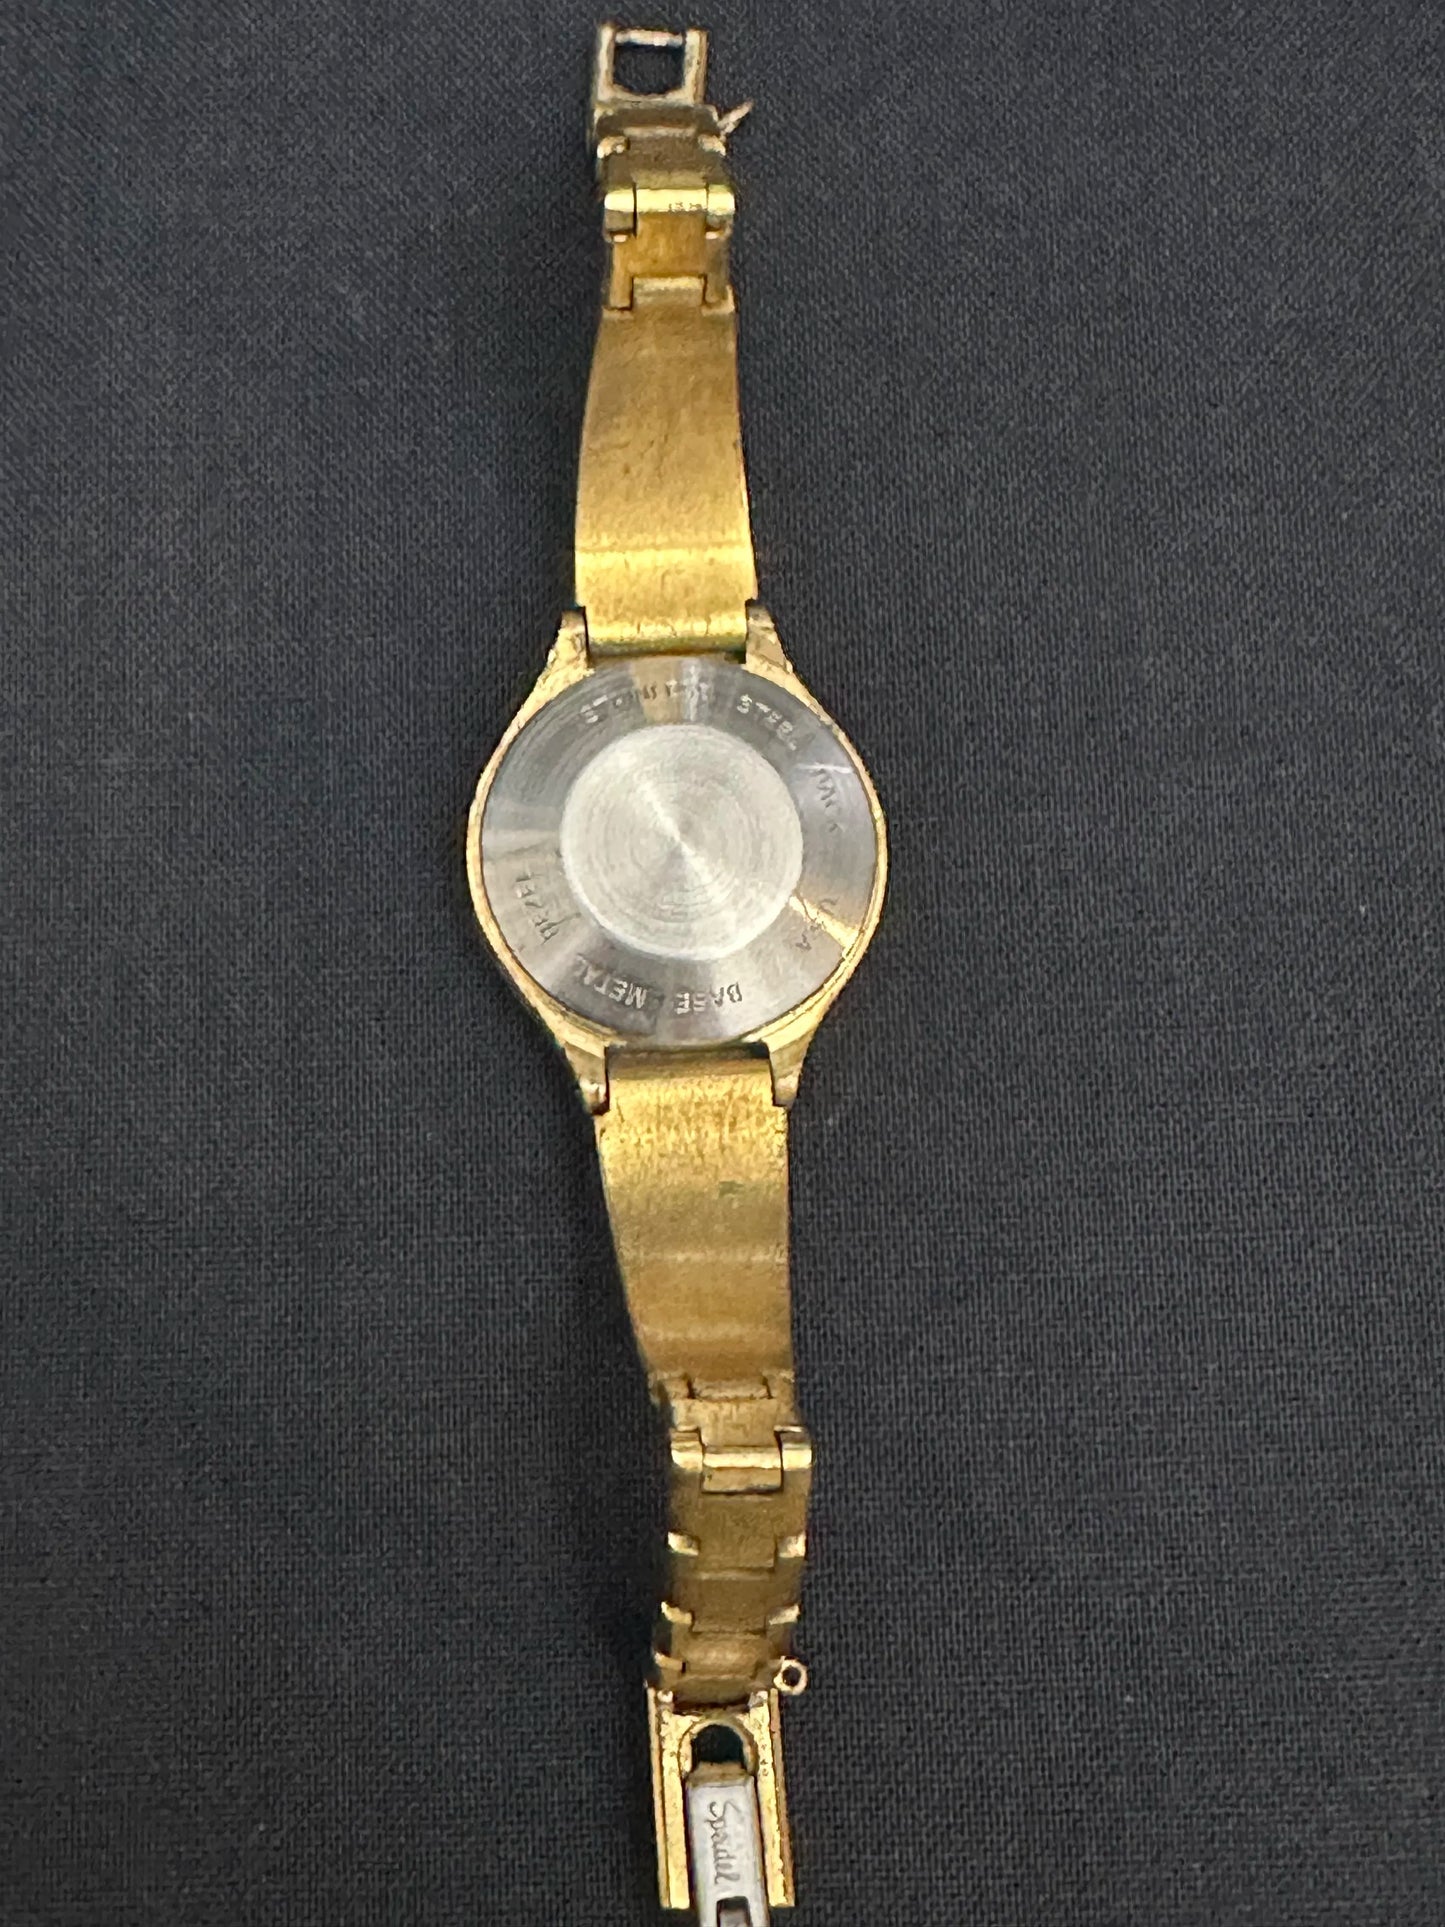 Speidel Vintage Digital Watch Back